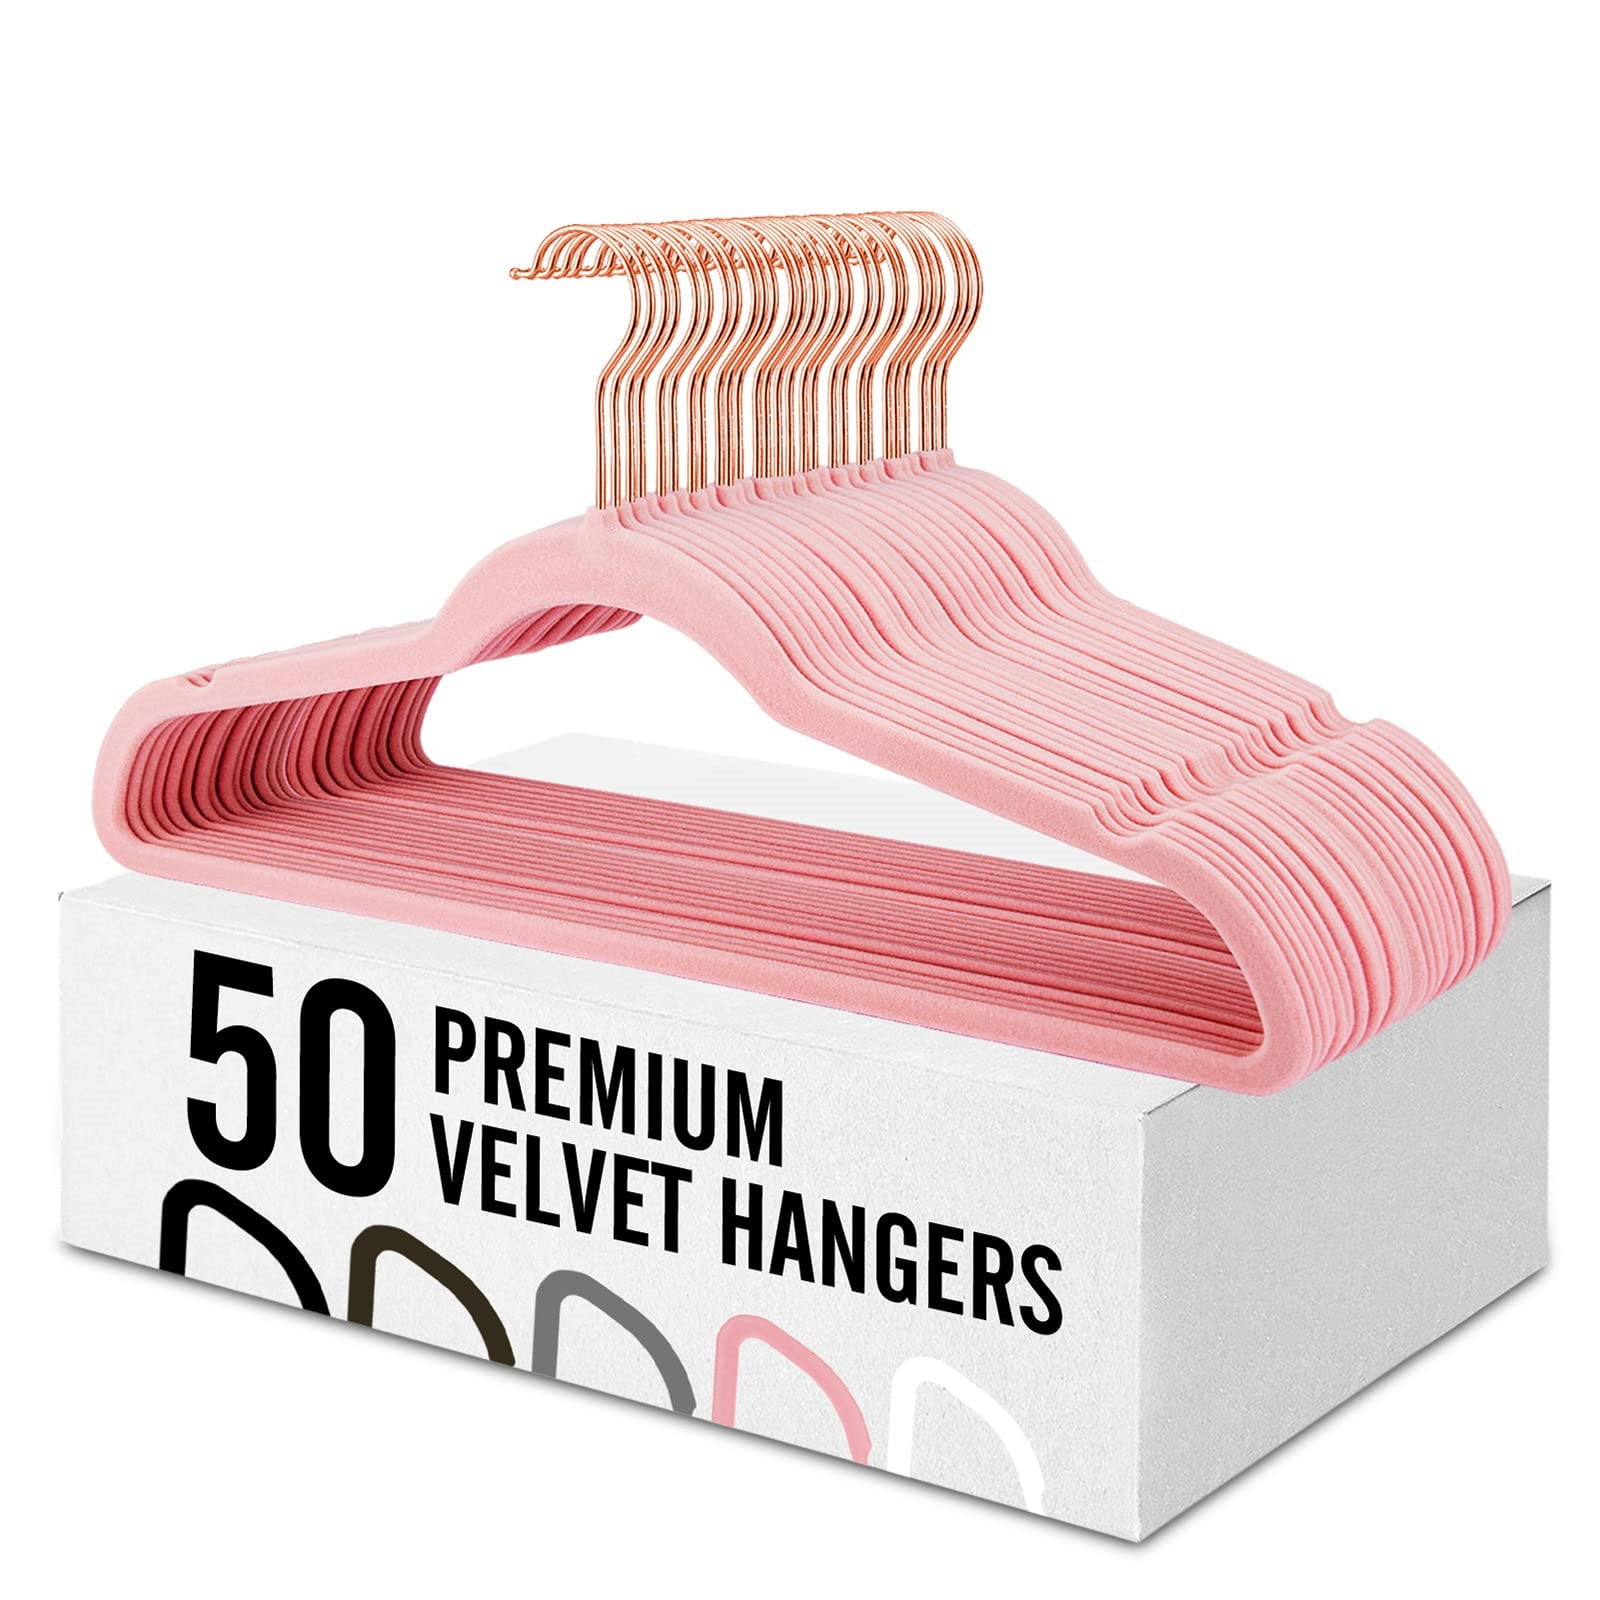 ACSTEP Velvet Hangers 50 Pack, Rose Gold Hooks Non Slip Felt